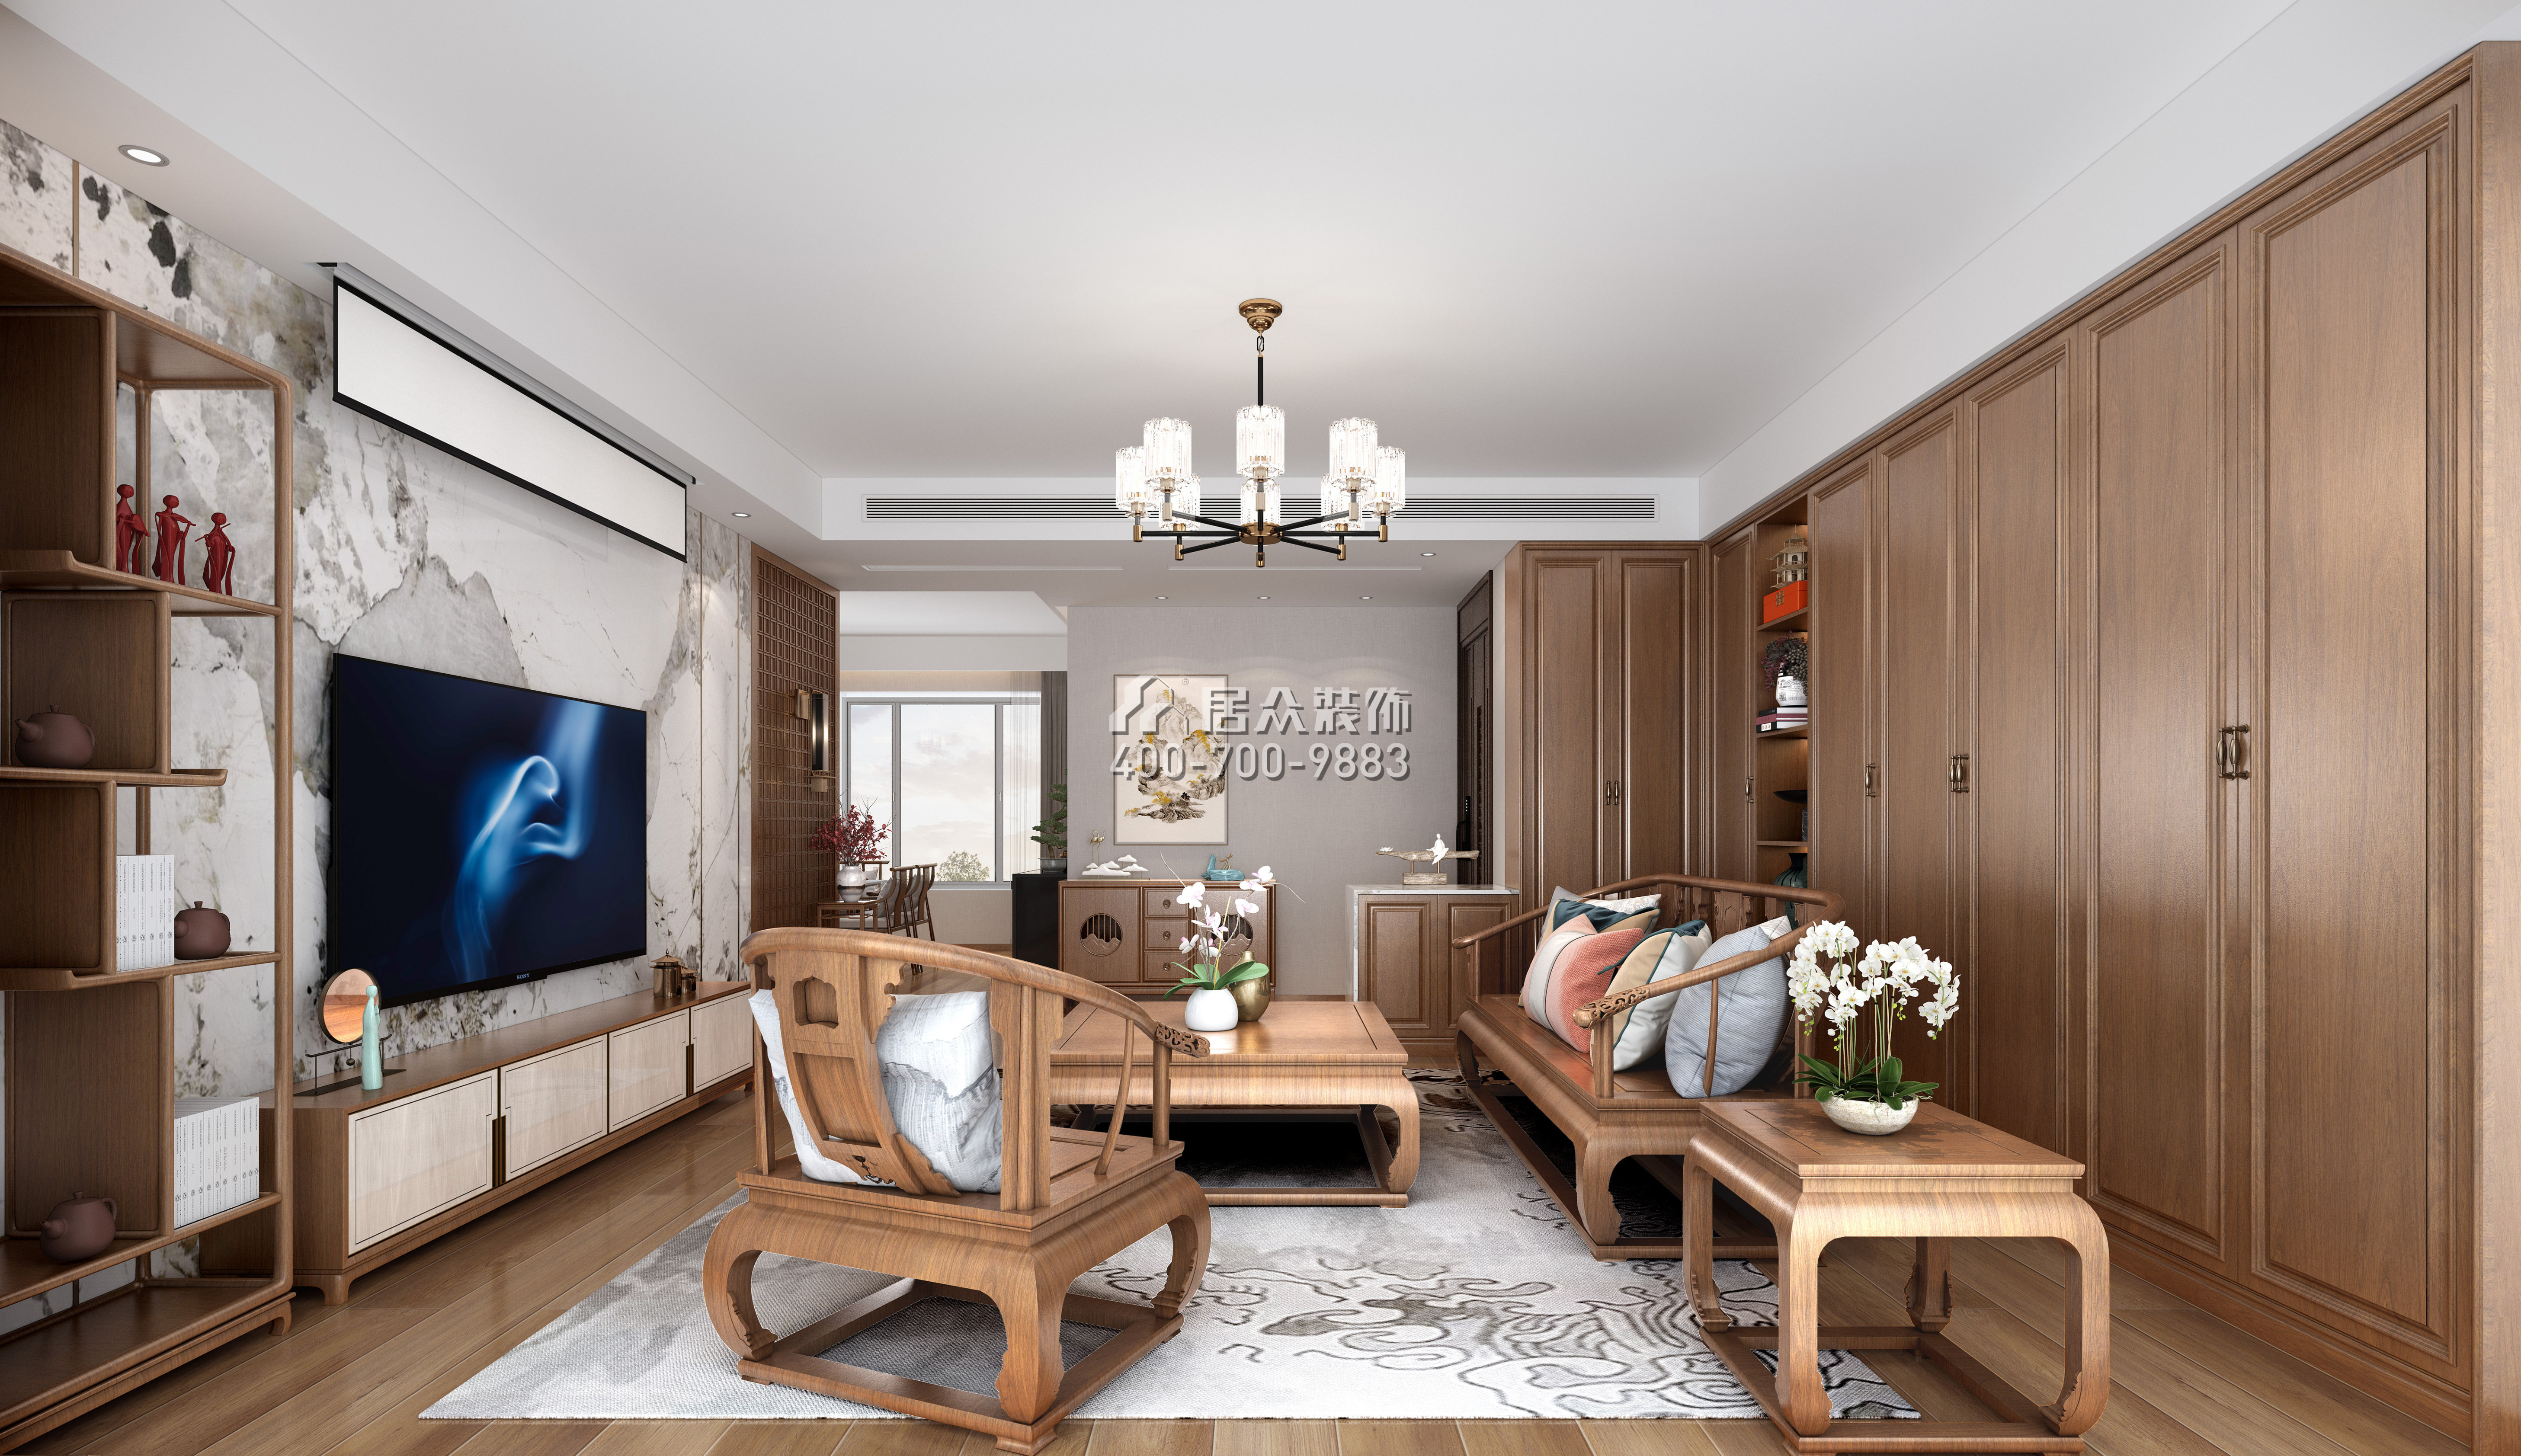 新天國際名苑150平方米中式風格平層戶型客廳裝修效果圖